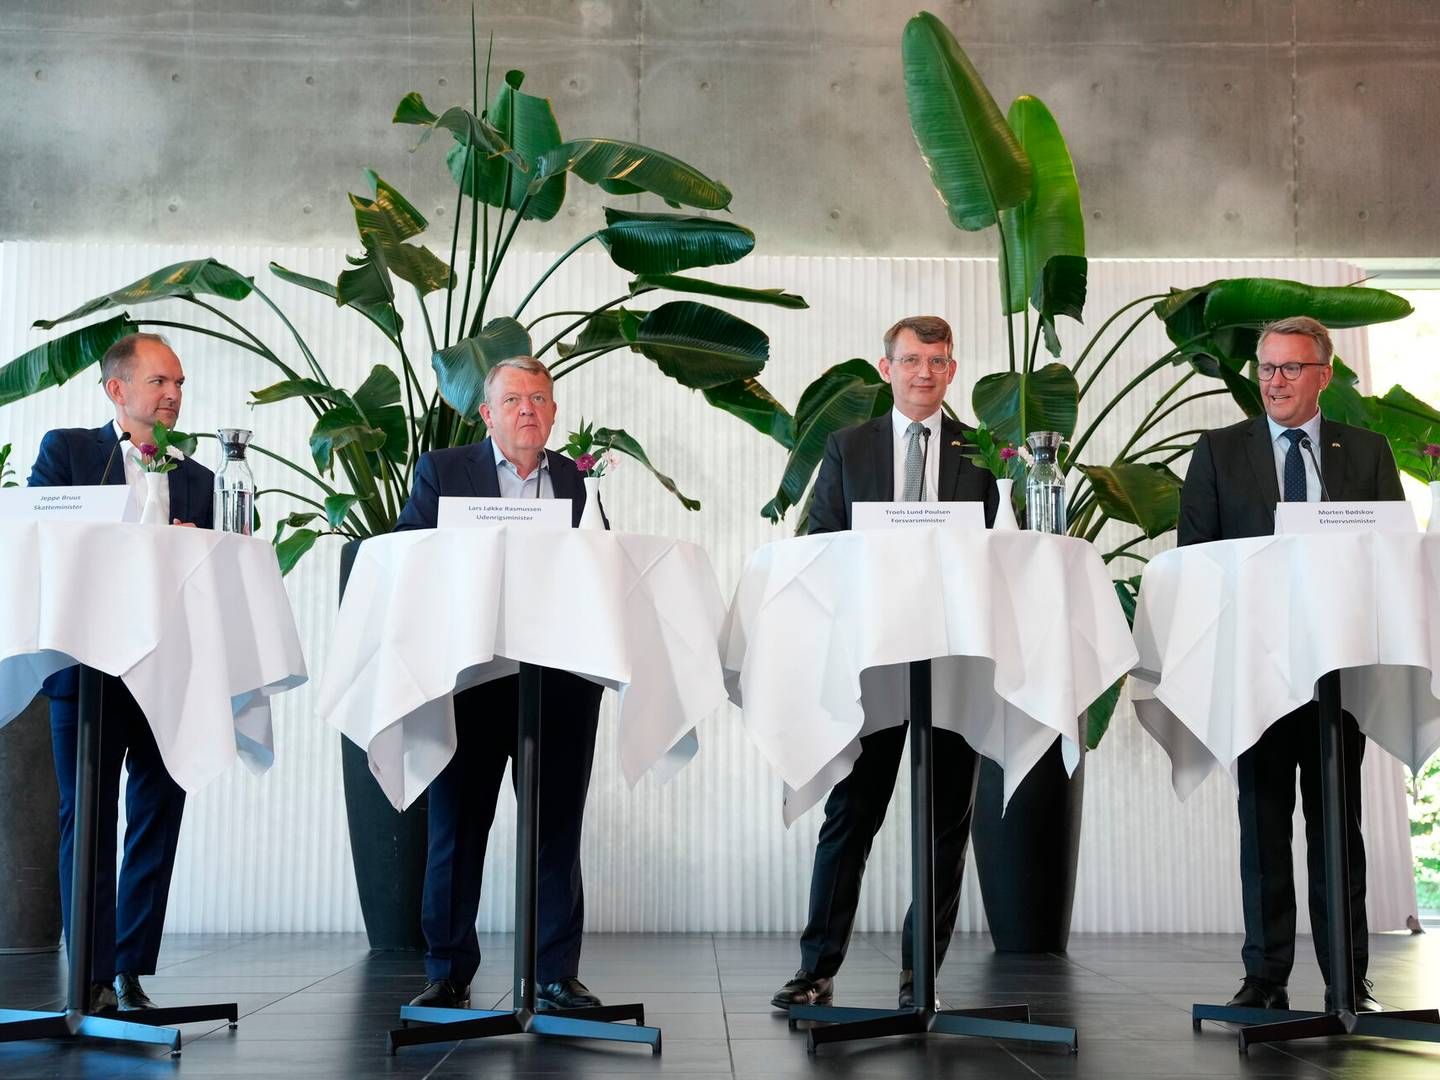 Regeringens pressemøde hos medicinalvirksomheden Lundbeck i Valby.